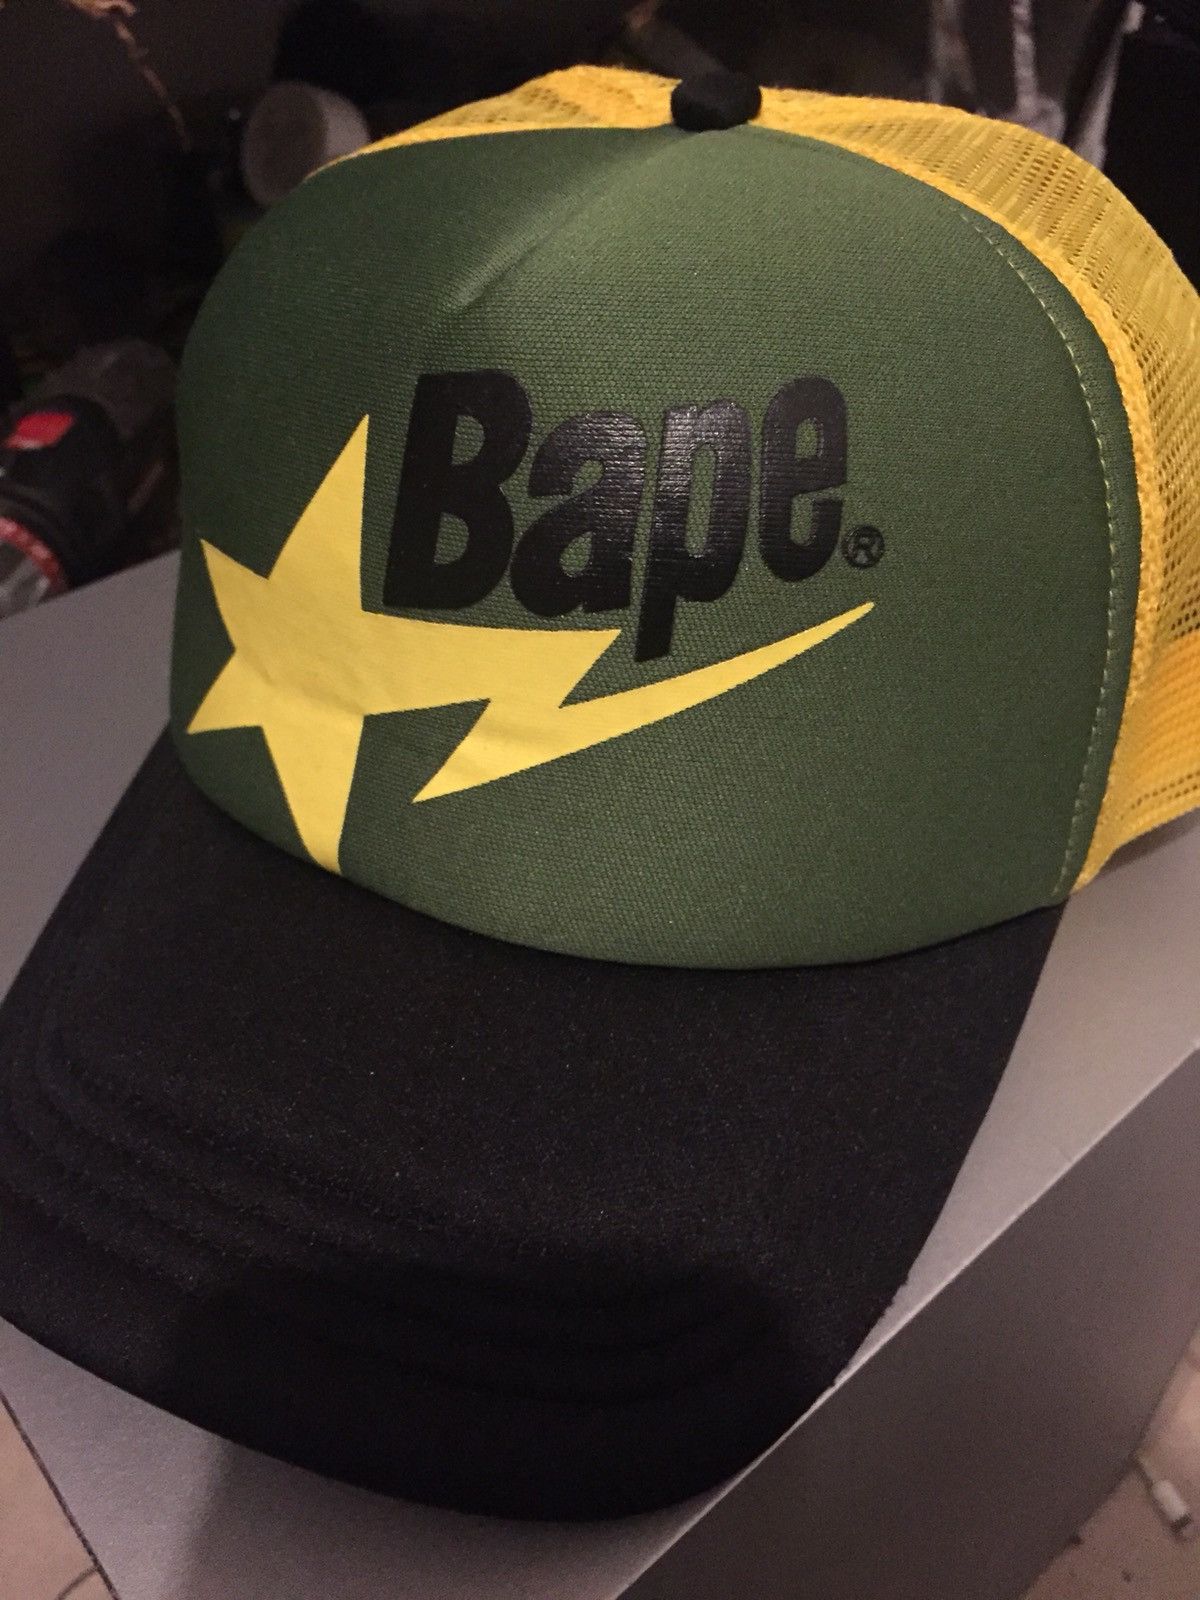 Bape Bapesta trucker hat Bape | Grailed